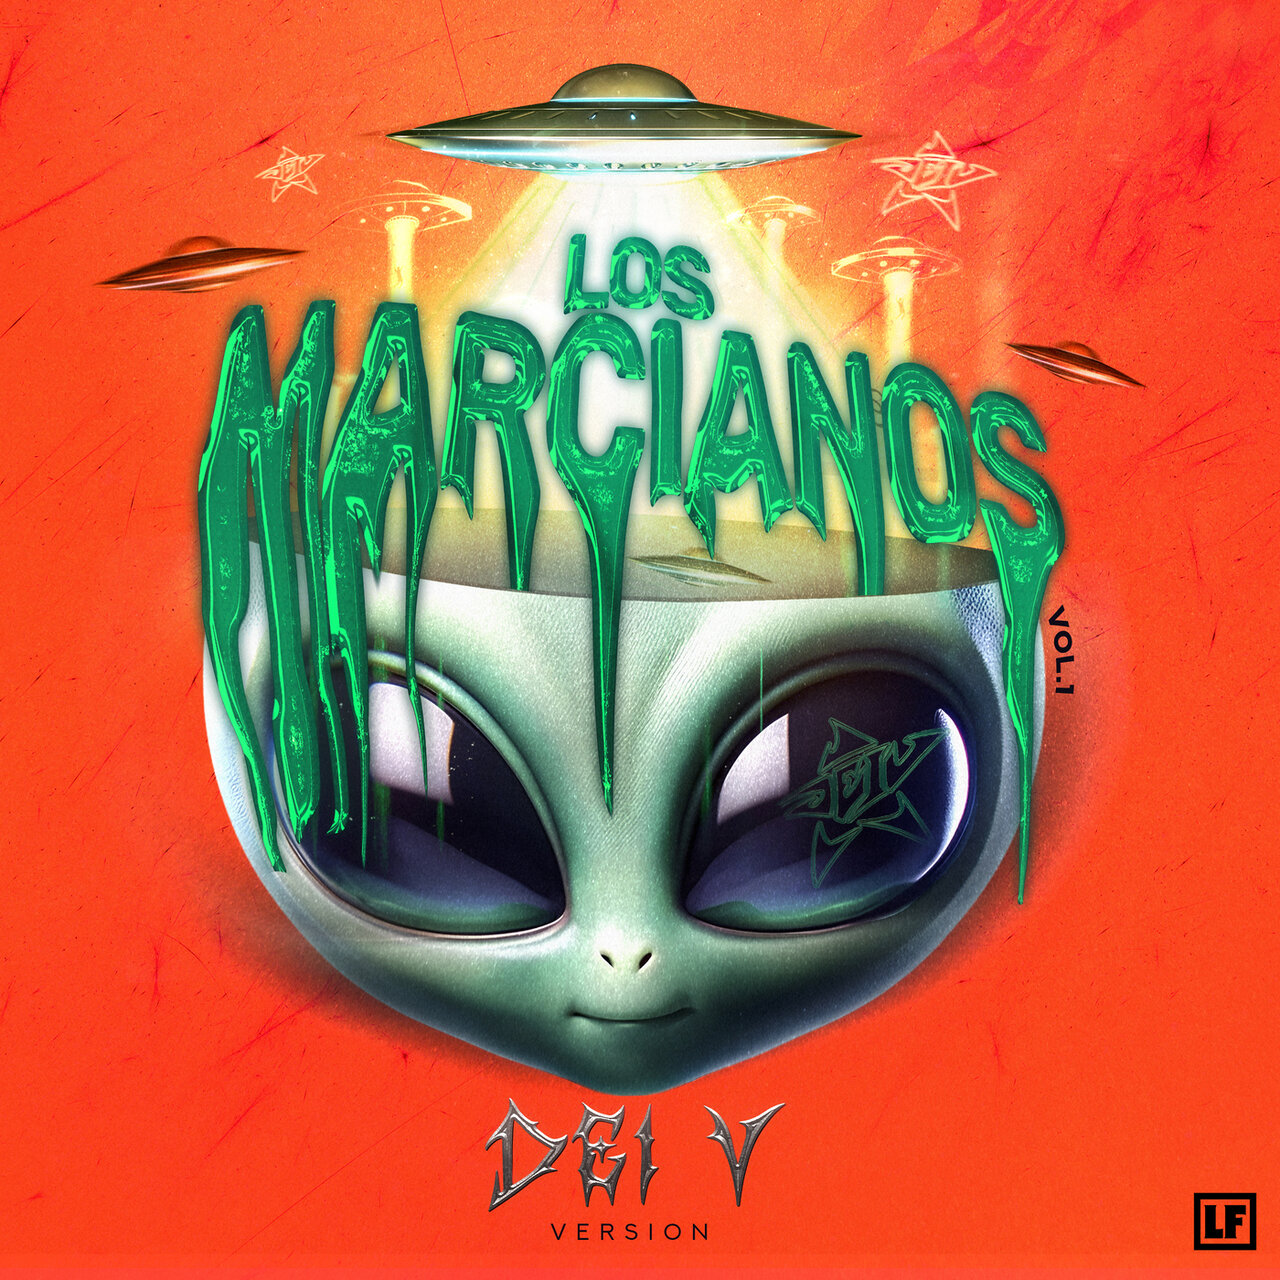 Los Marcianos Vol. 1: Dei V Version (Cover)